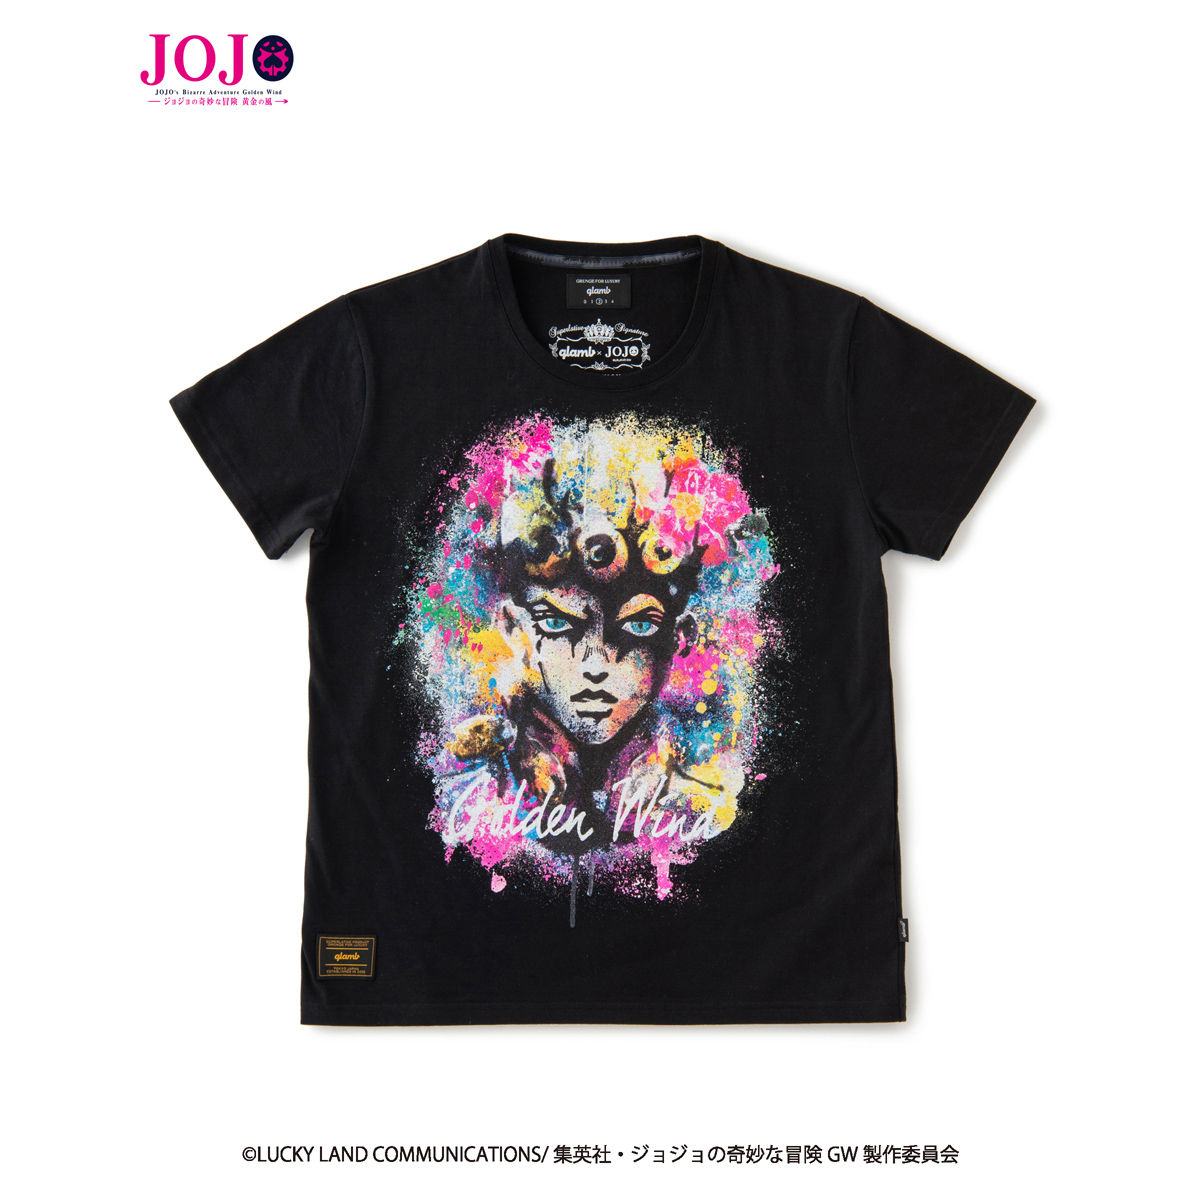 ジョジョの奇妙な冒険 黄金の風』×『glamb』コラボレーションTシャツ ...